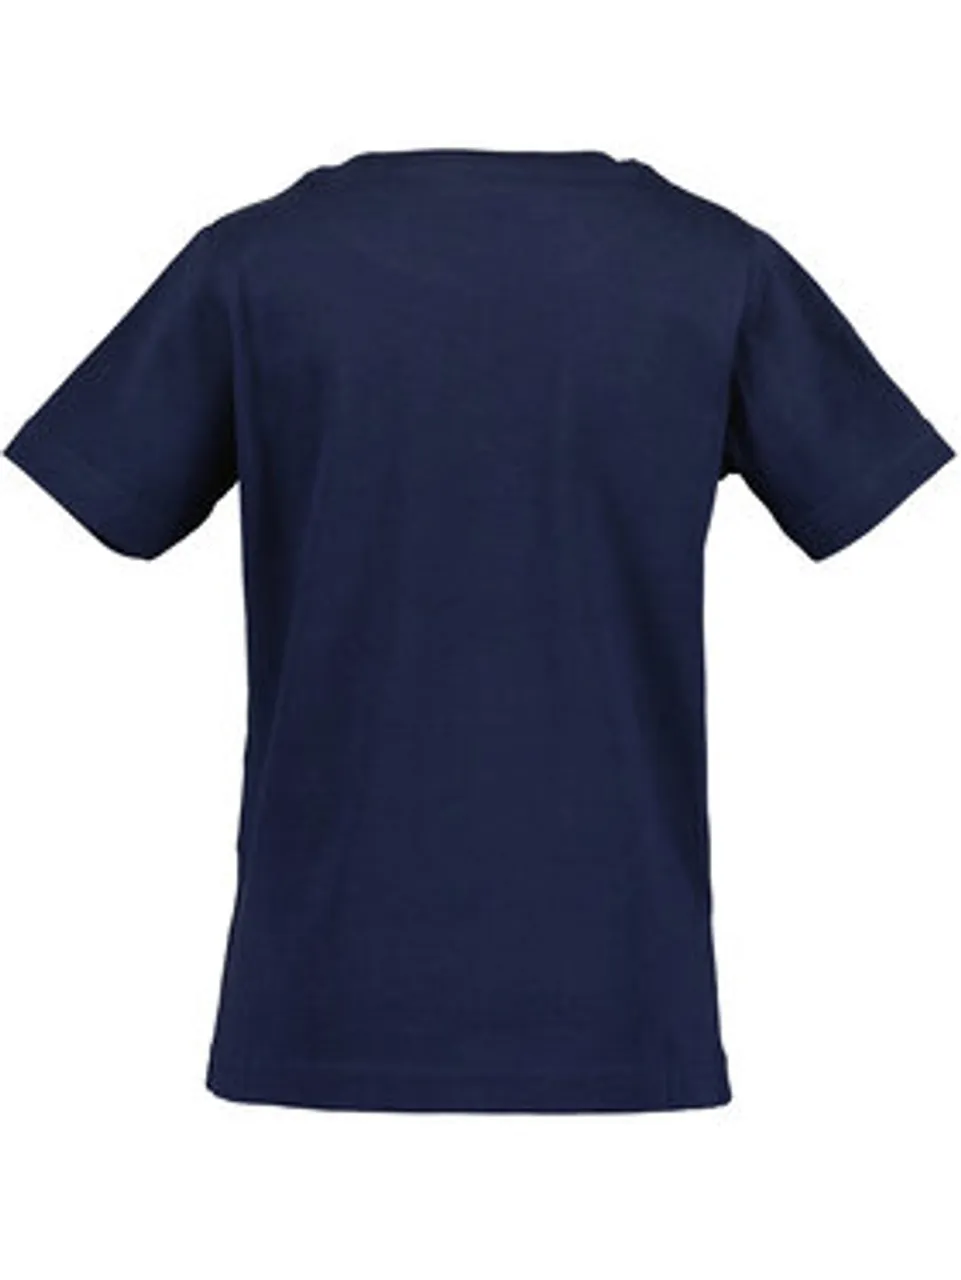 Blue Seven T-Shirt 802255 X Blau Regular Fit